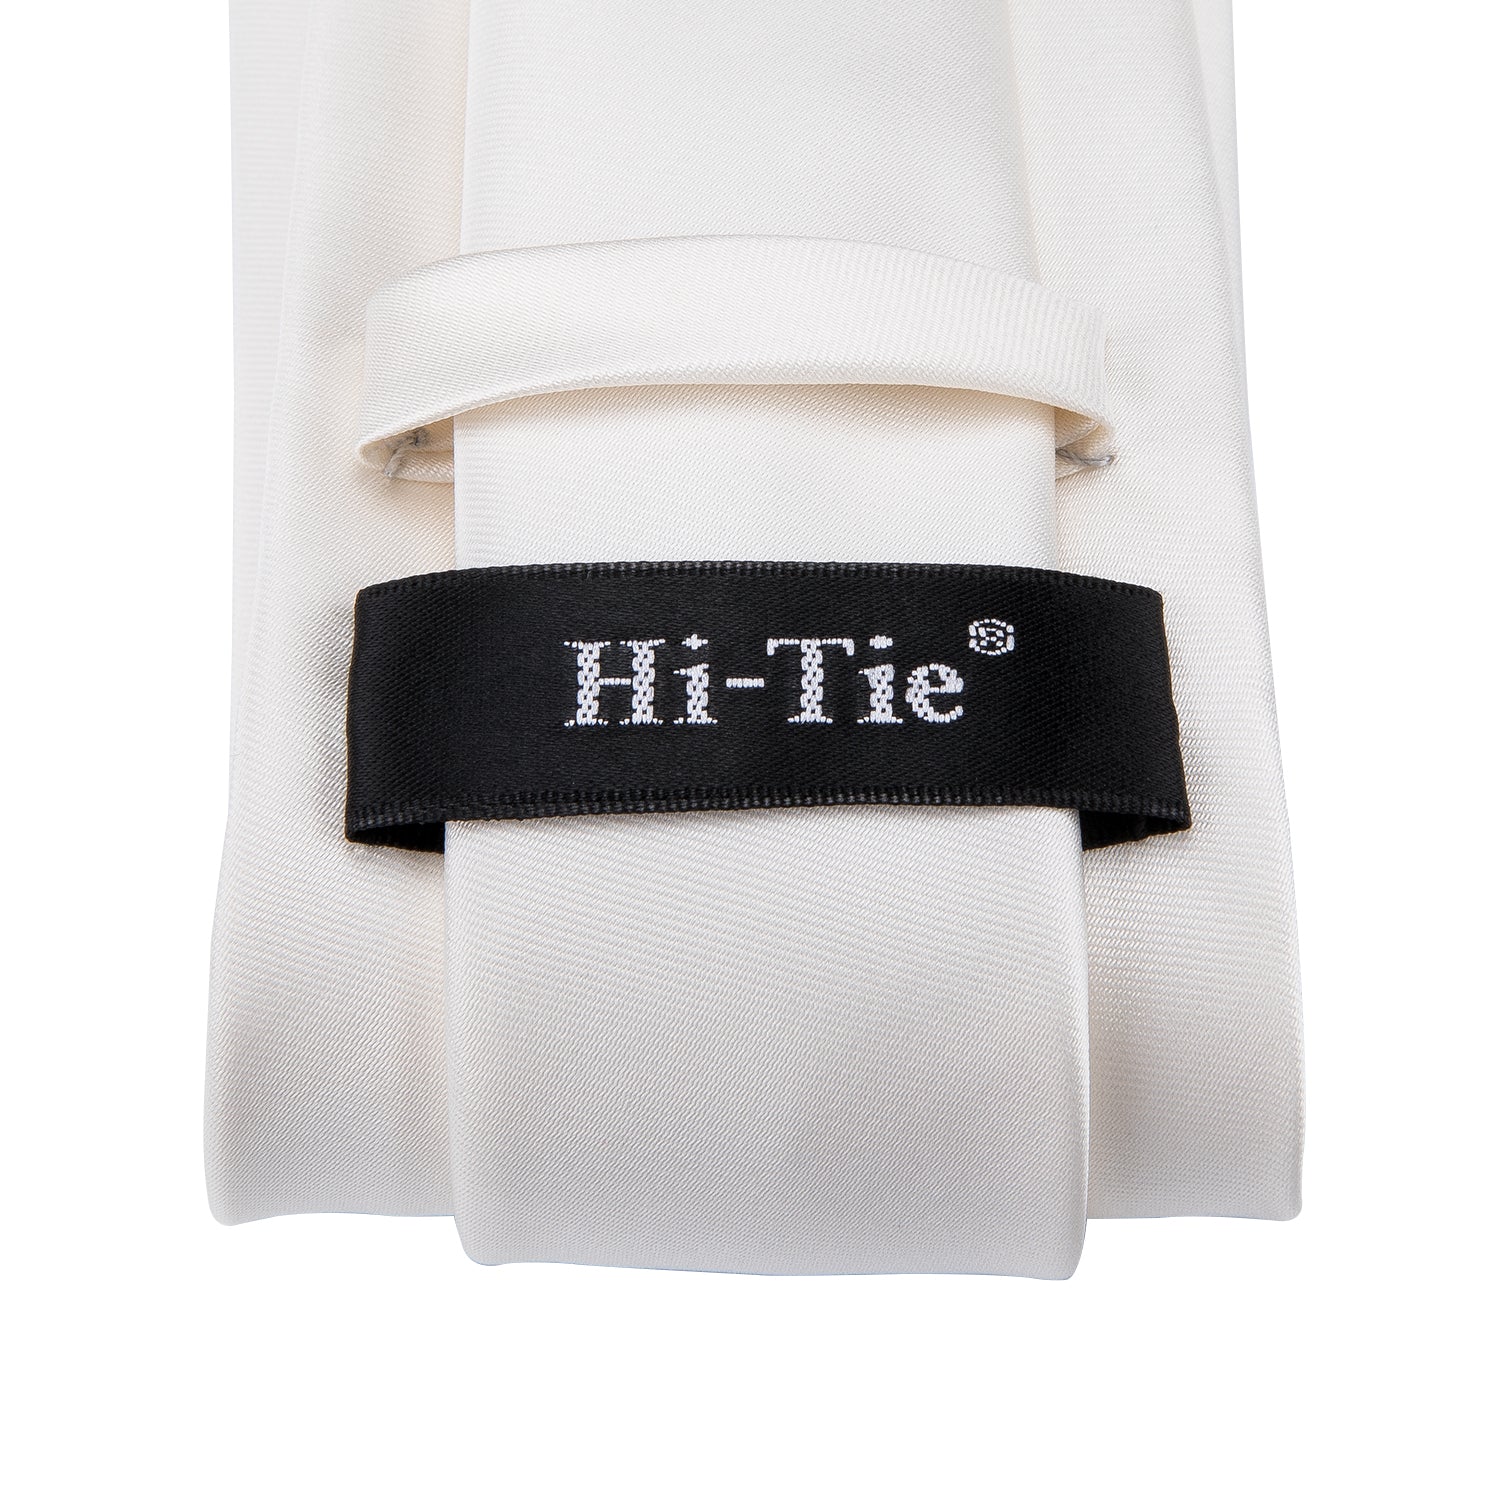 Solid Milky White Tie Pocket Square Cufflinks Set